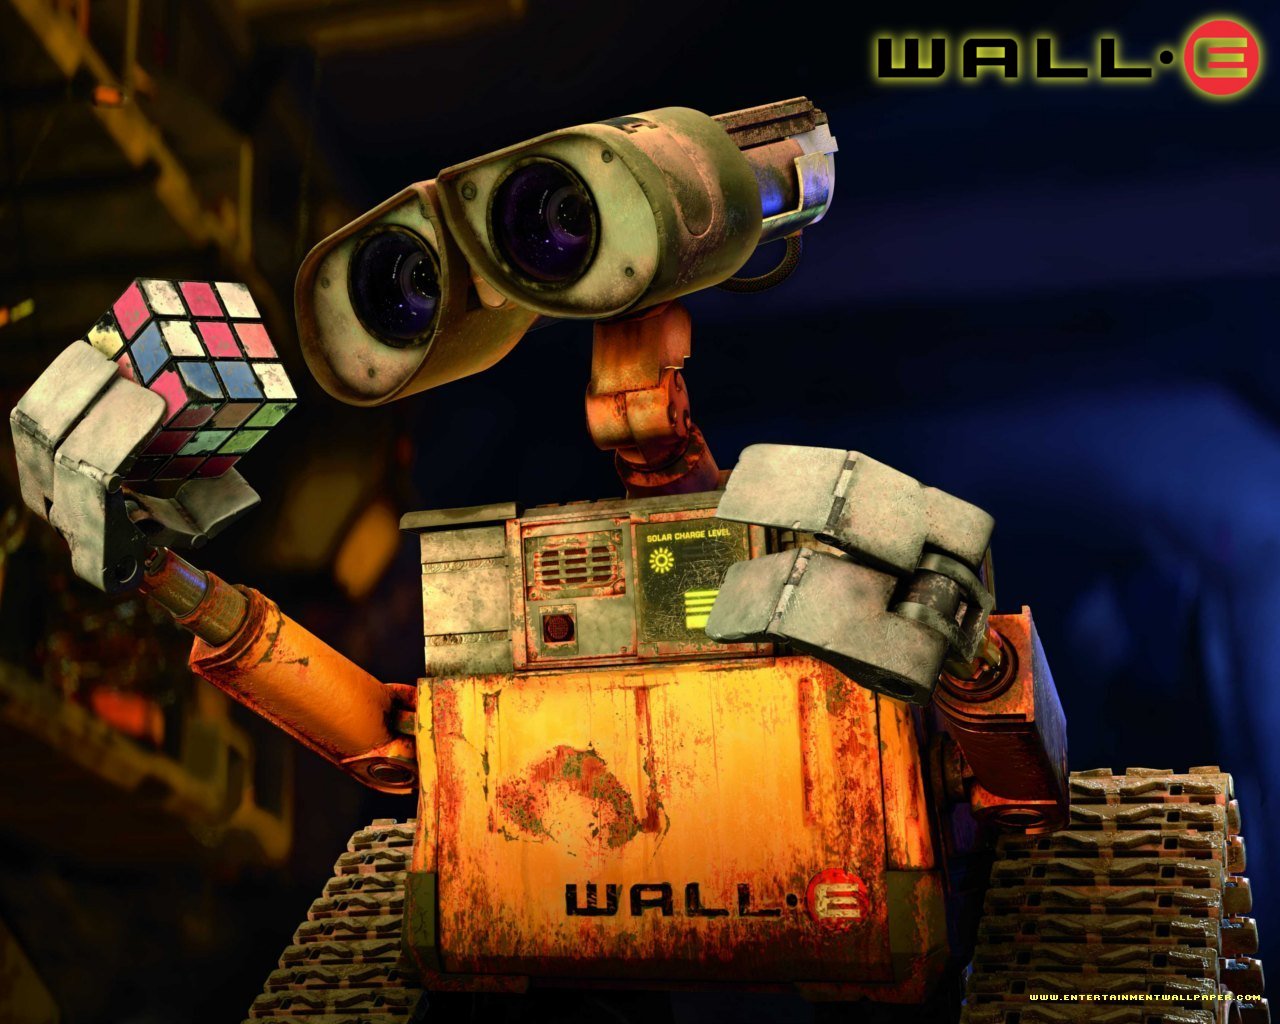 壁纸1280x1024 超可爱 WALL E 机器人瓦力 壁纸壁纸 动画电影《机器人总动员WALL·E 》全套壁纸壁纸 动画电影《机器人总动员WALL·E 》全套壁纸图片 动画电影《机器人总动员WALL·E 》全套壁纸素材 影视壁纸 影视图库 影视图片素材桌面壁纸